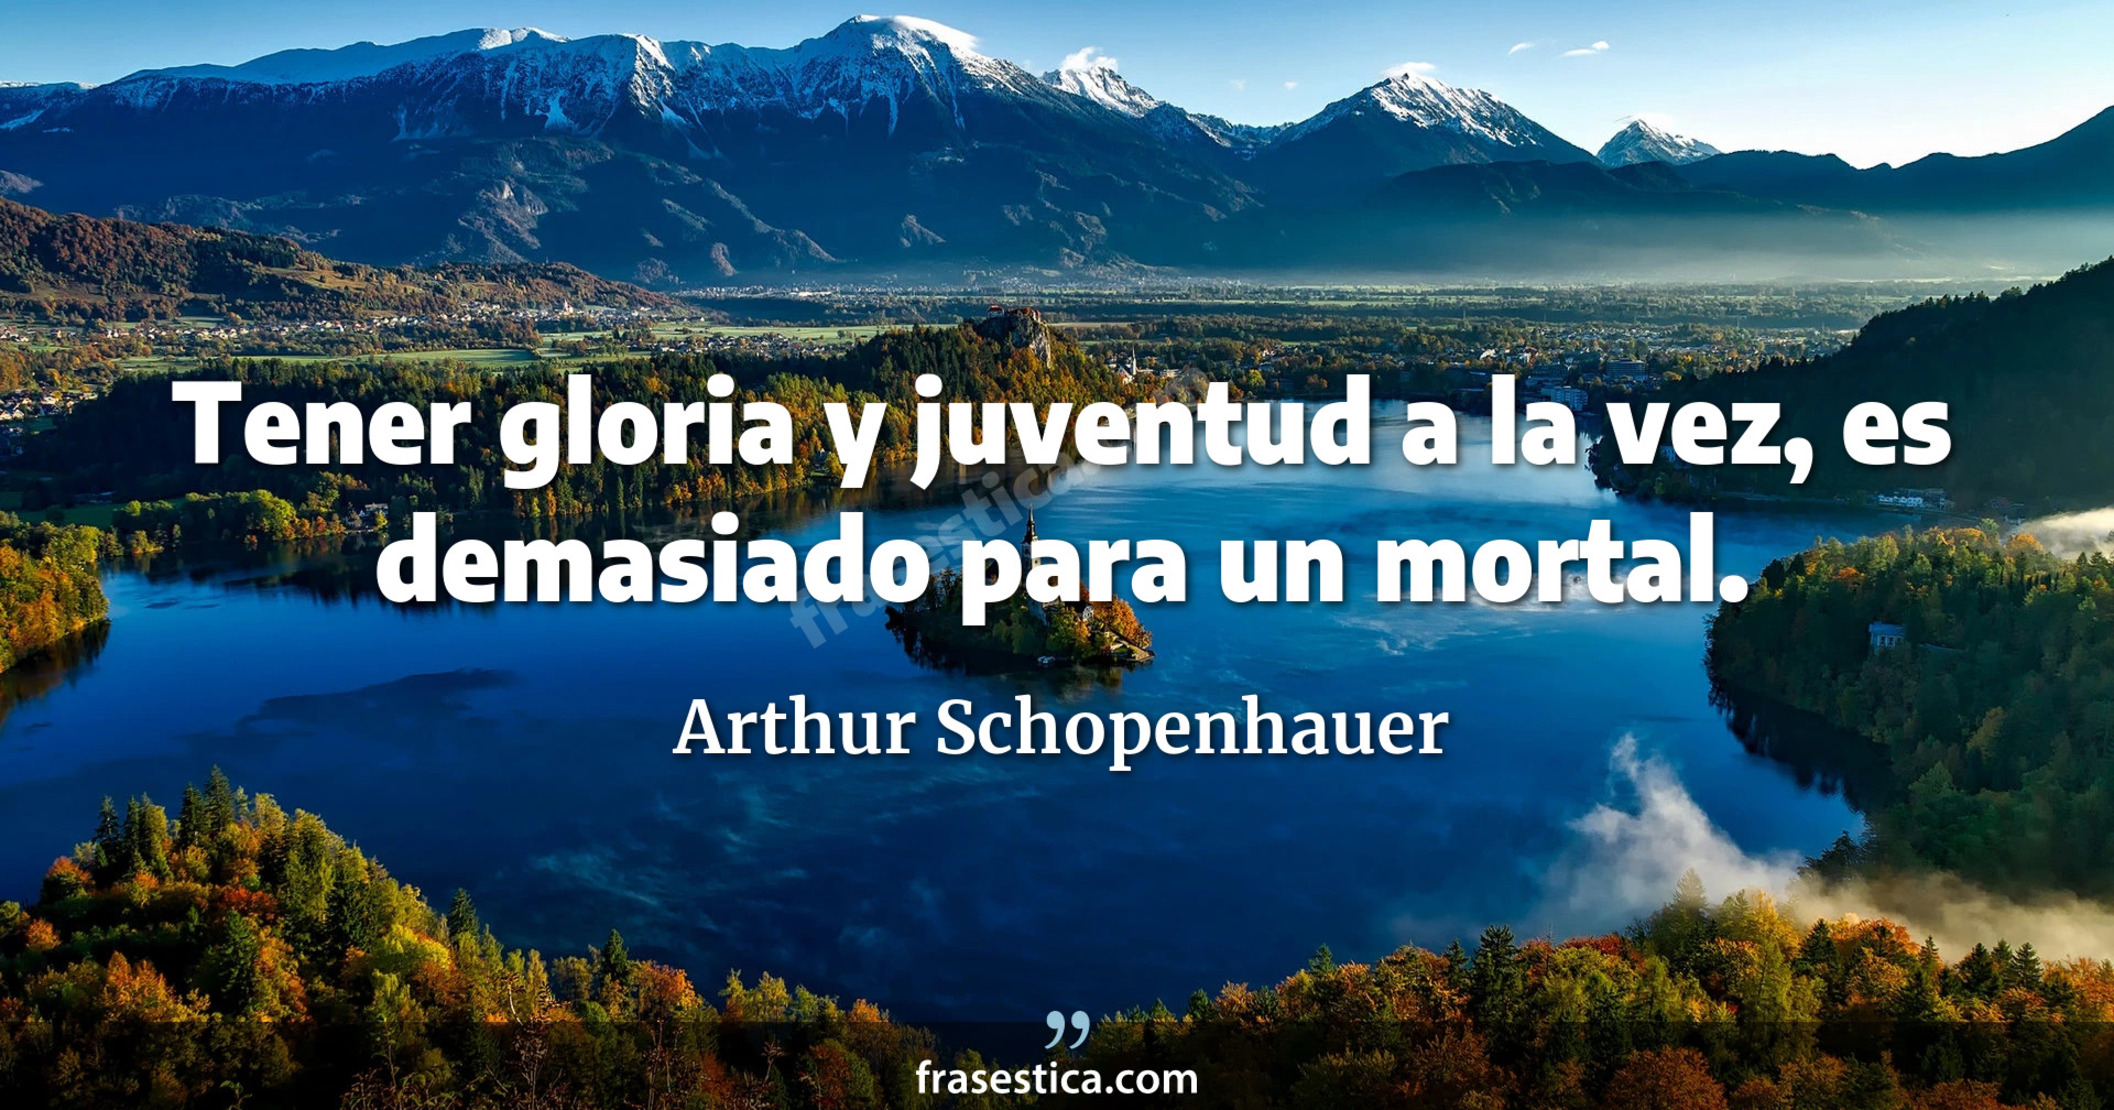 Tener gloria y juventud a la vez, es demasiado para un mortal. - Arthur Schopenhauer